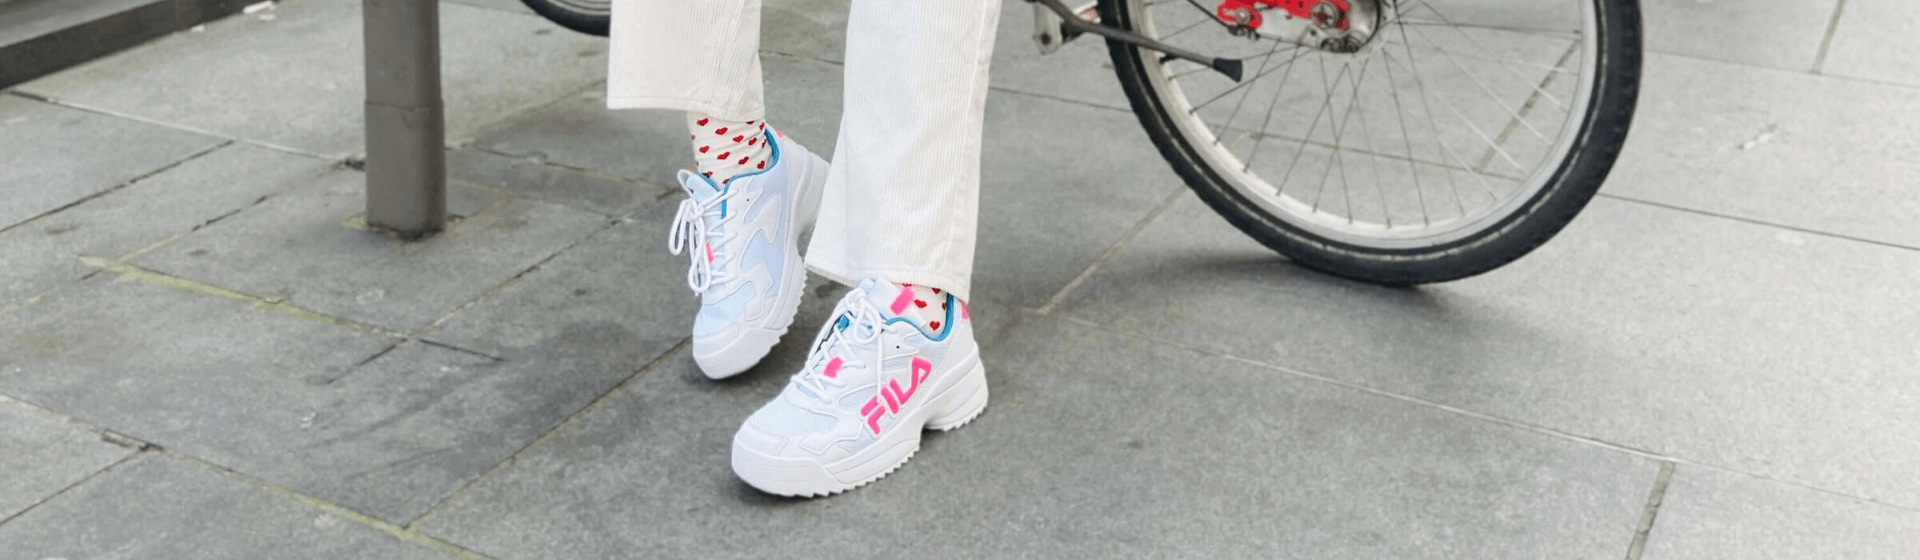 Overdreven pijnlijk emulsie Put some color in your life with Fila sneakers - Shoelove bij vanHaren